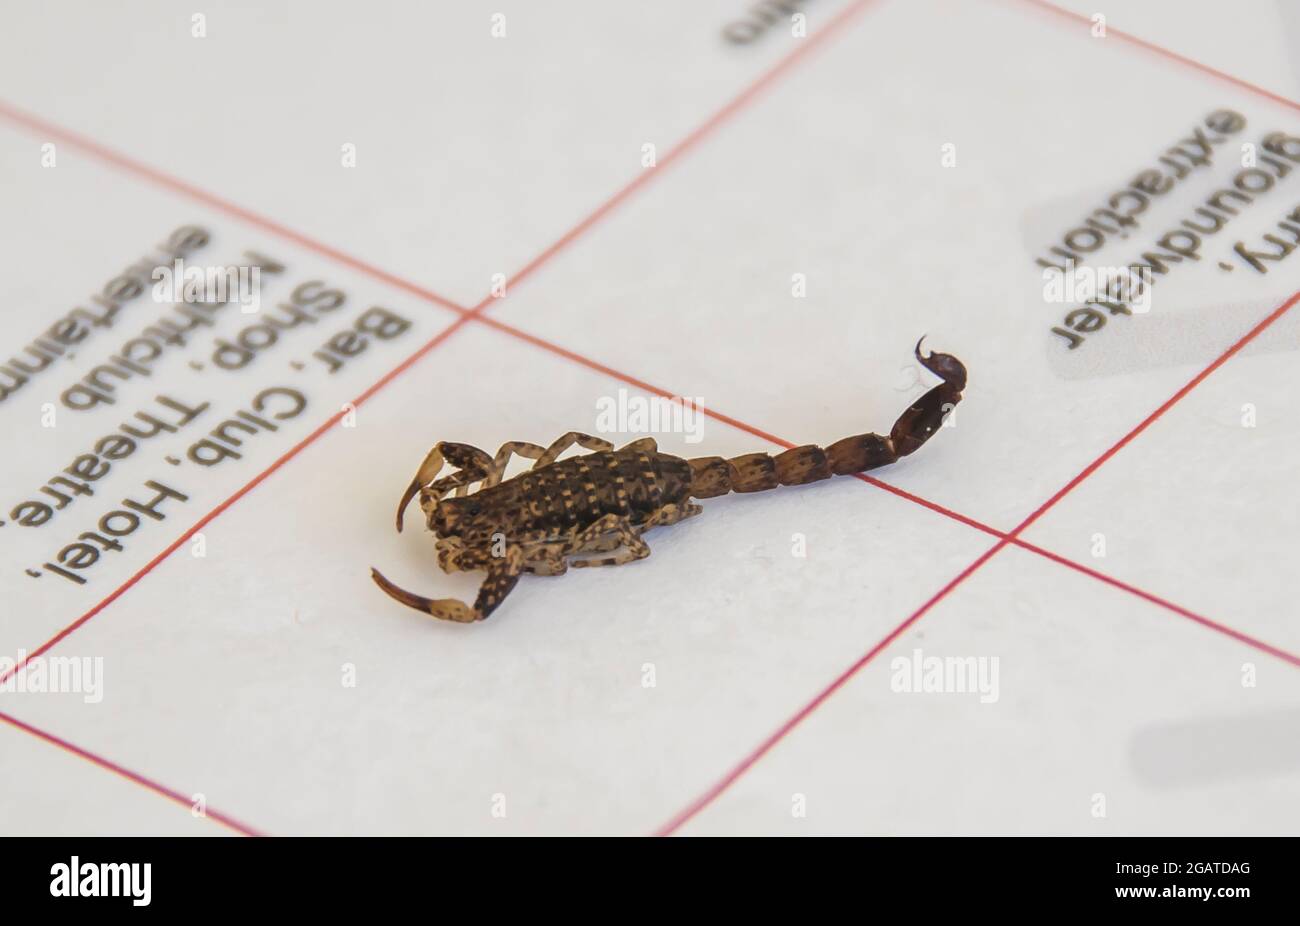 Scorpione martoreo, Lychas marmoreus, lievemente velenoso, che riposa su documenti di pianificazione all'interno della casa a Queensland, Australia. Ospite della casa di primavera. Foto Stock